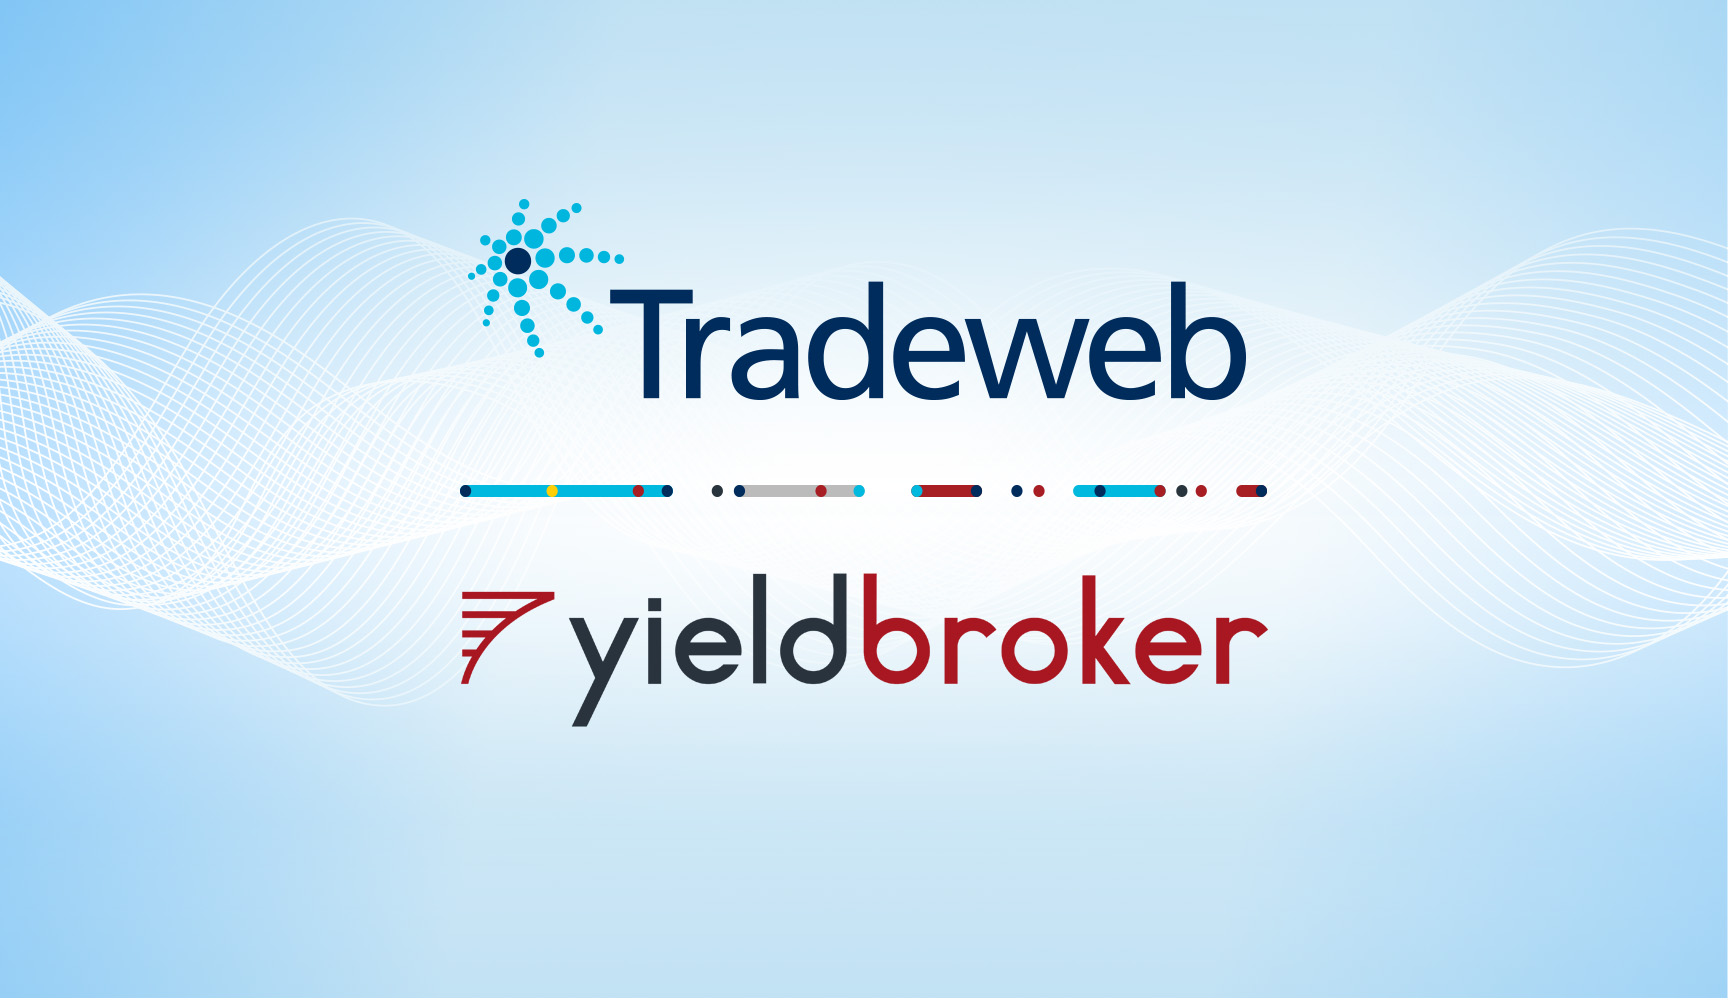 Yieldbroker news release